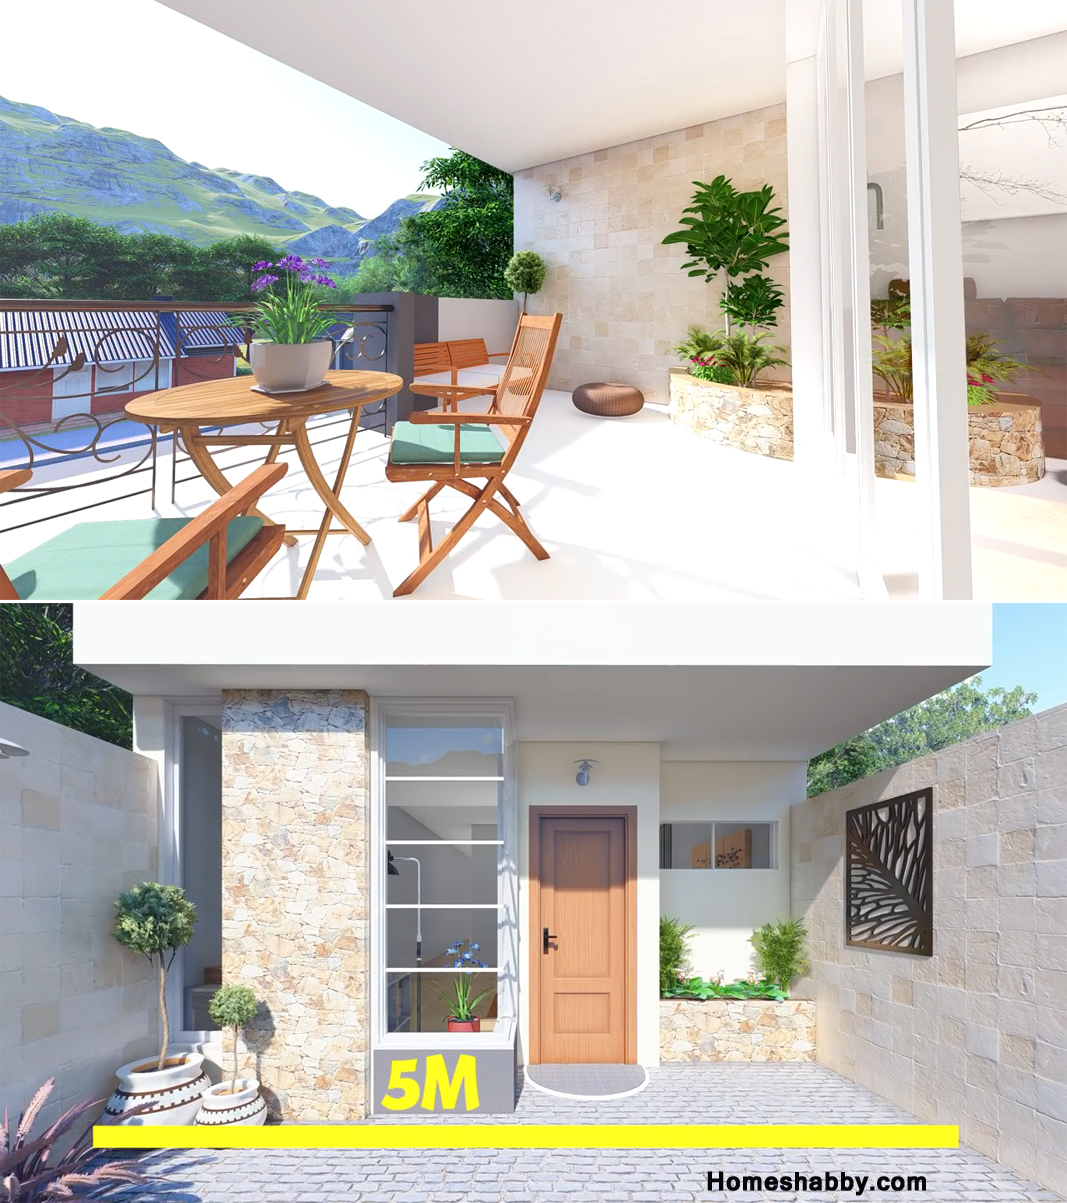 Desain Dan Denah Rumah Mungil 2 Lantai Ukuran 5 X 25 M Dengan Konsep Simple Tapi Mempesona Dan Hemat Biaya Homeshabbycom Design Home Plans